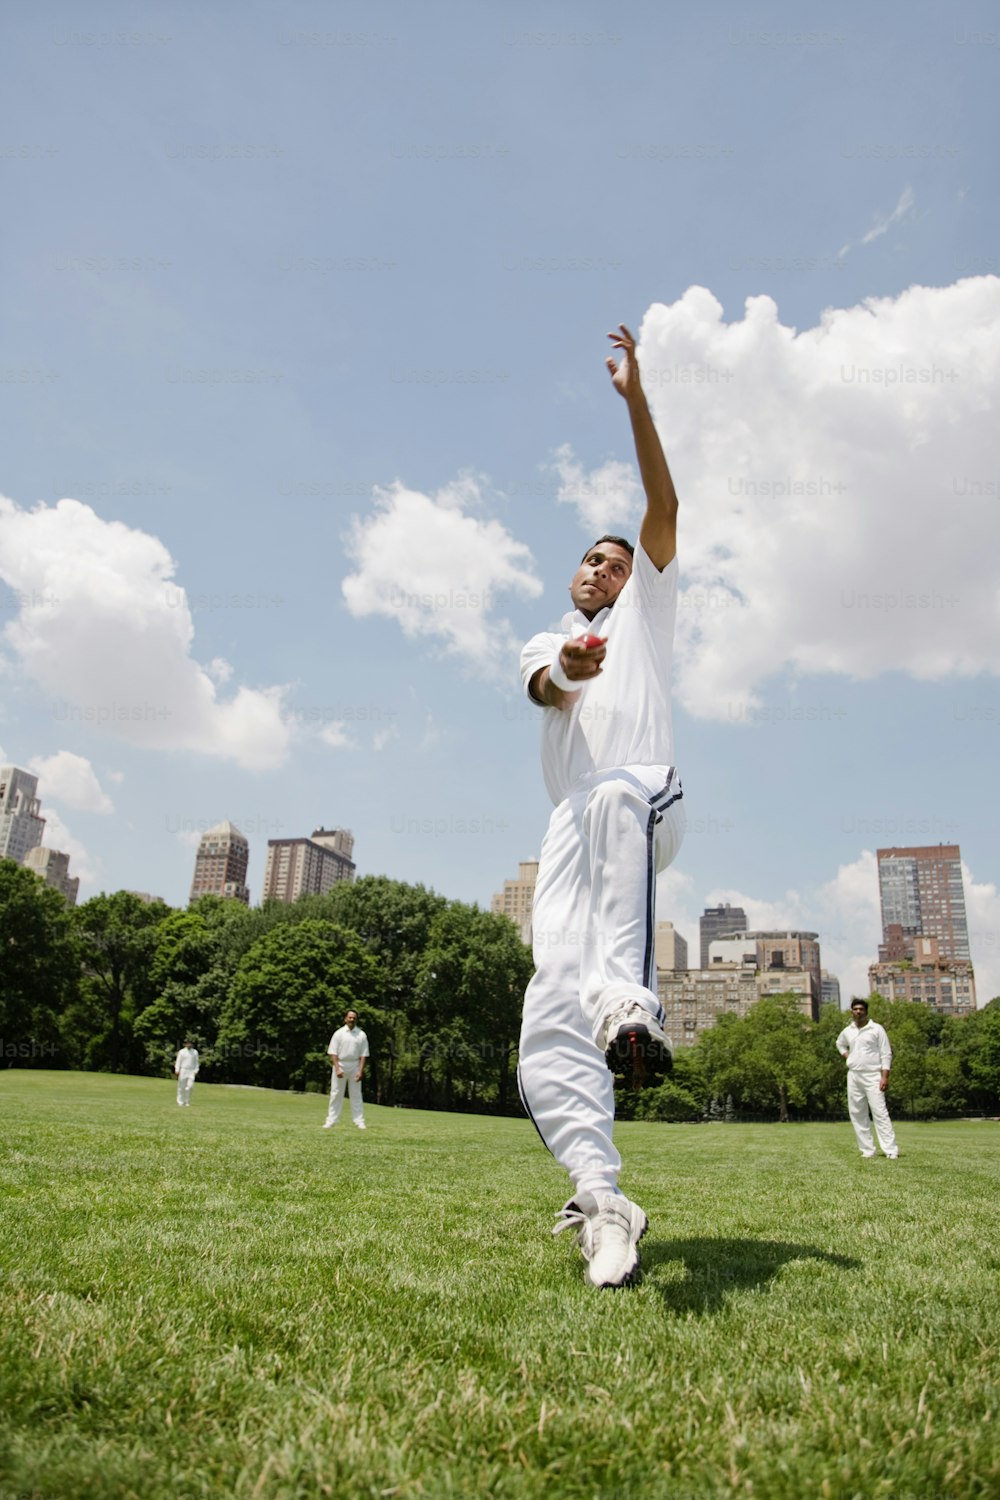 Un hombre con uniforme blanco está lanzando un frisbee